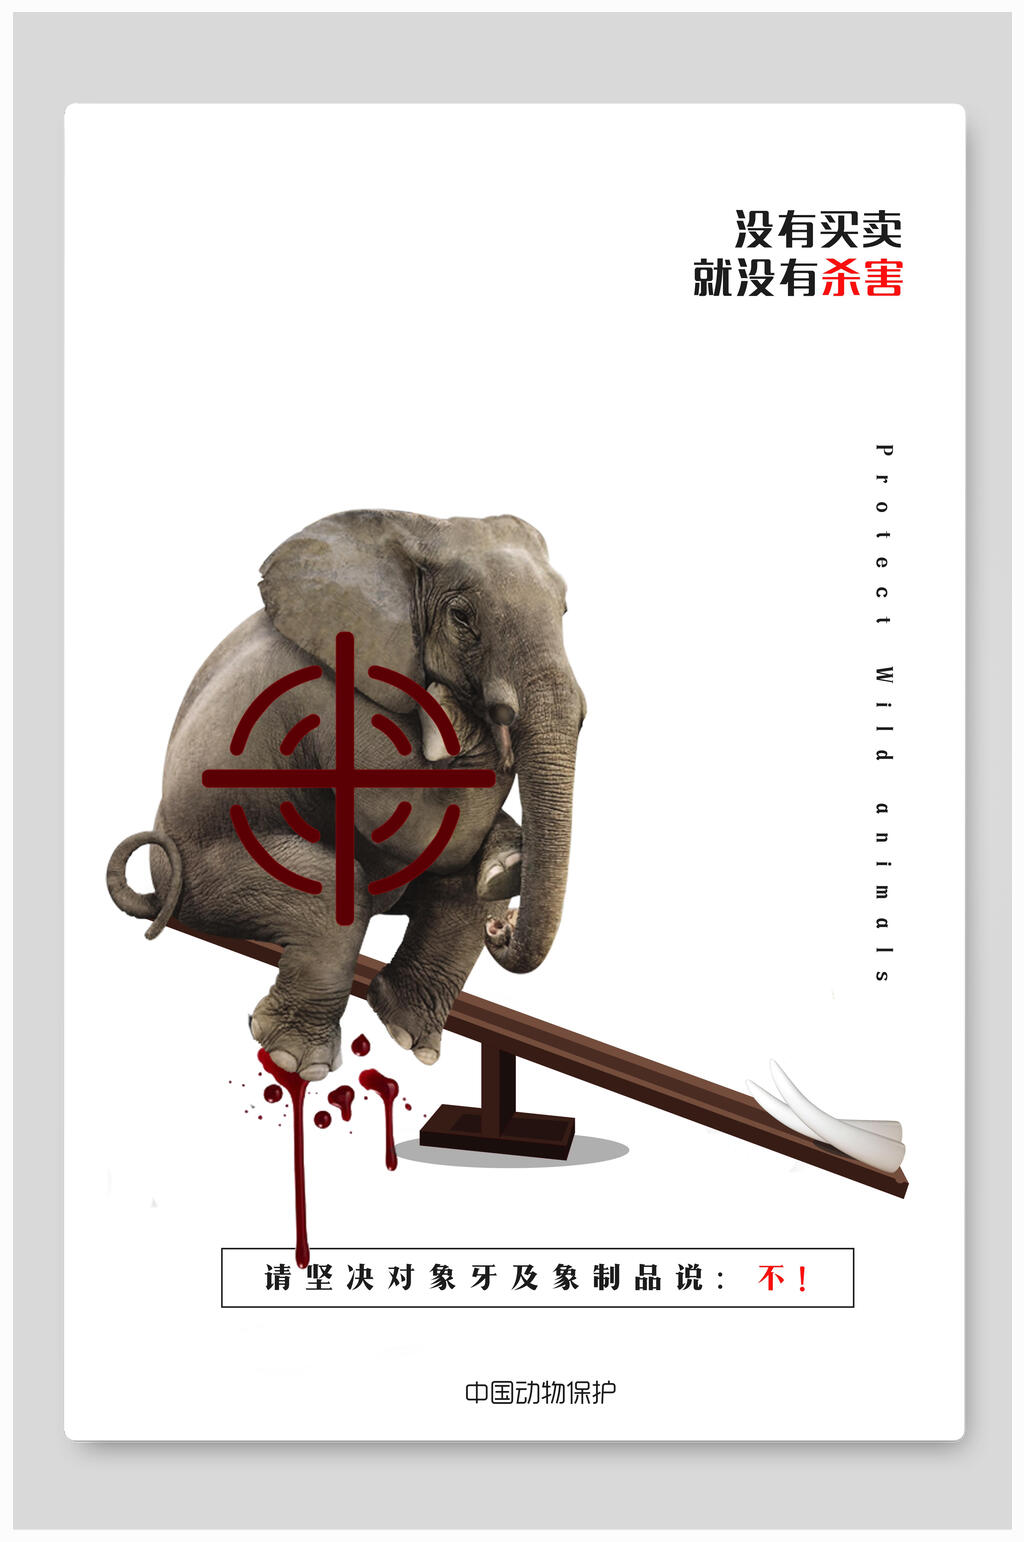 保护动物海报素材免费下载,本作品是由小红1210上传的原创平面广告